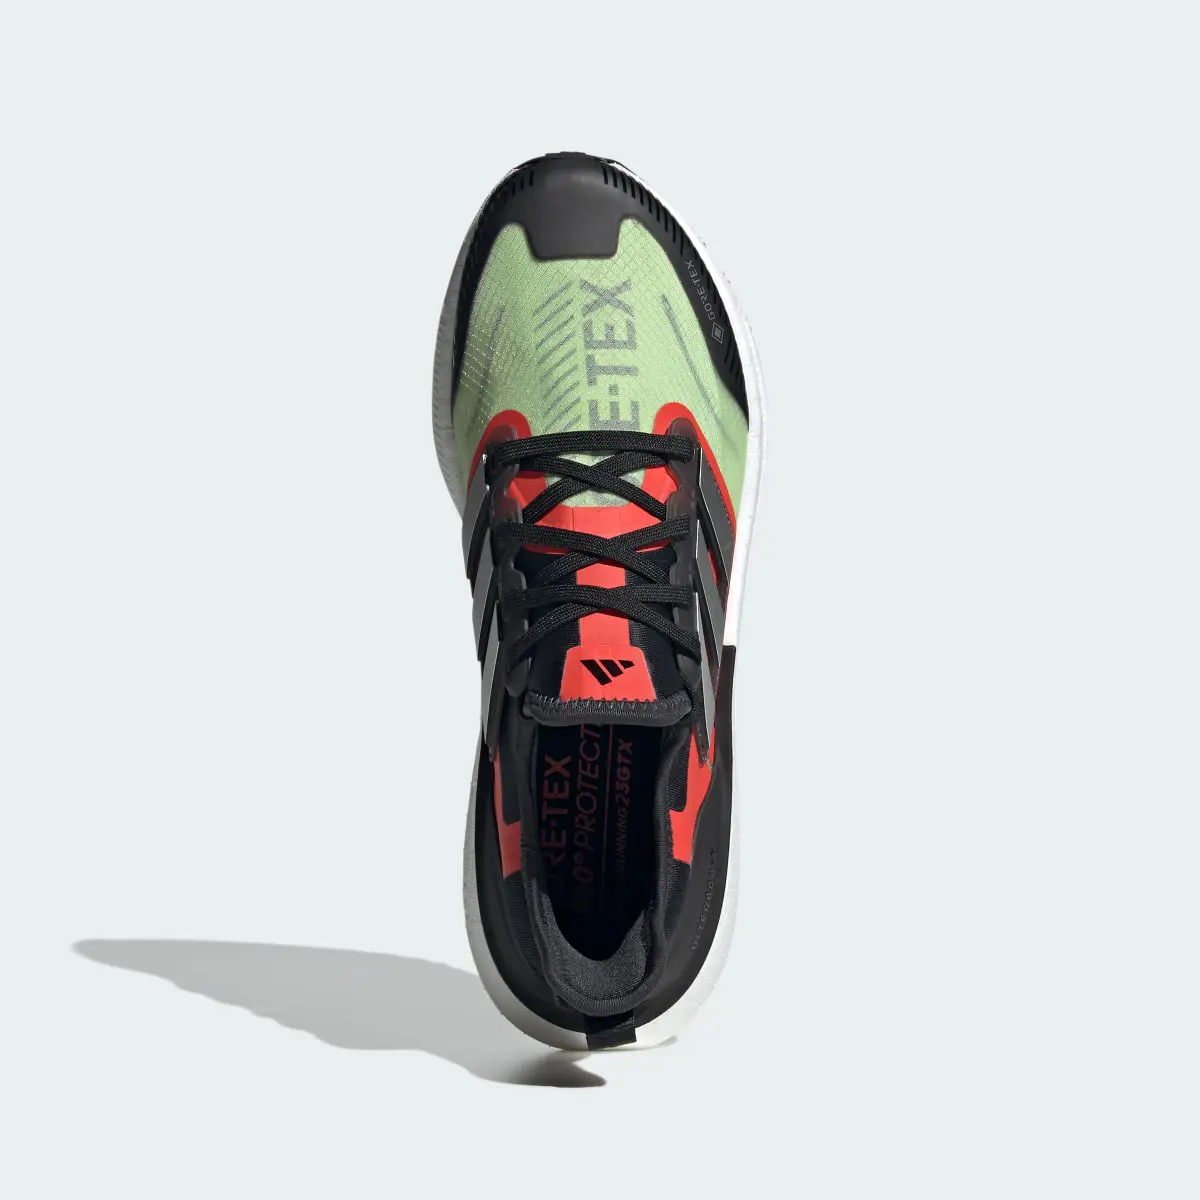 Adidas Ultraboost Light GORE-TEX Running Shoes. 3